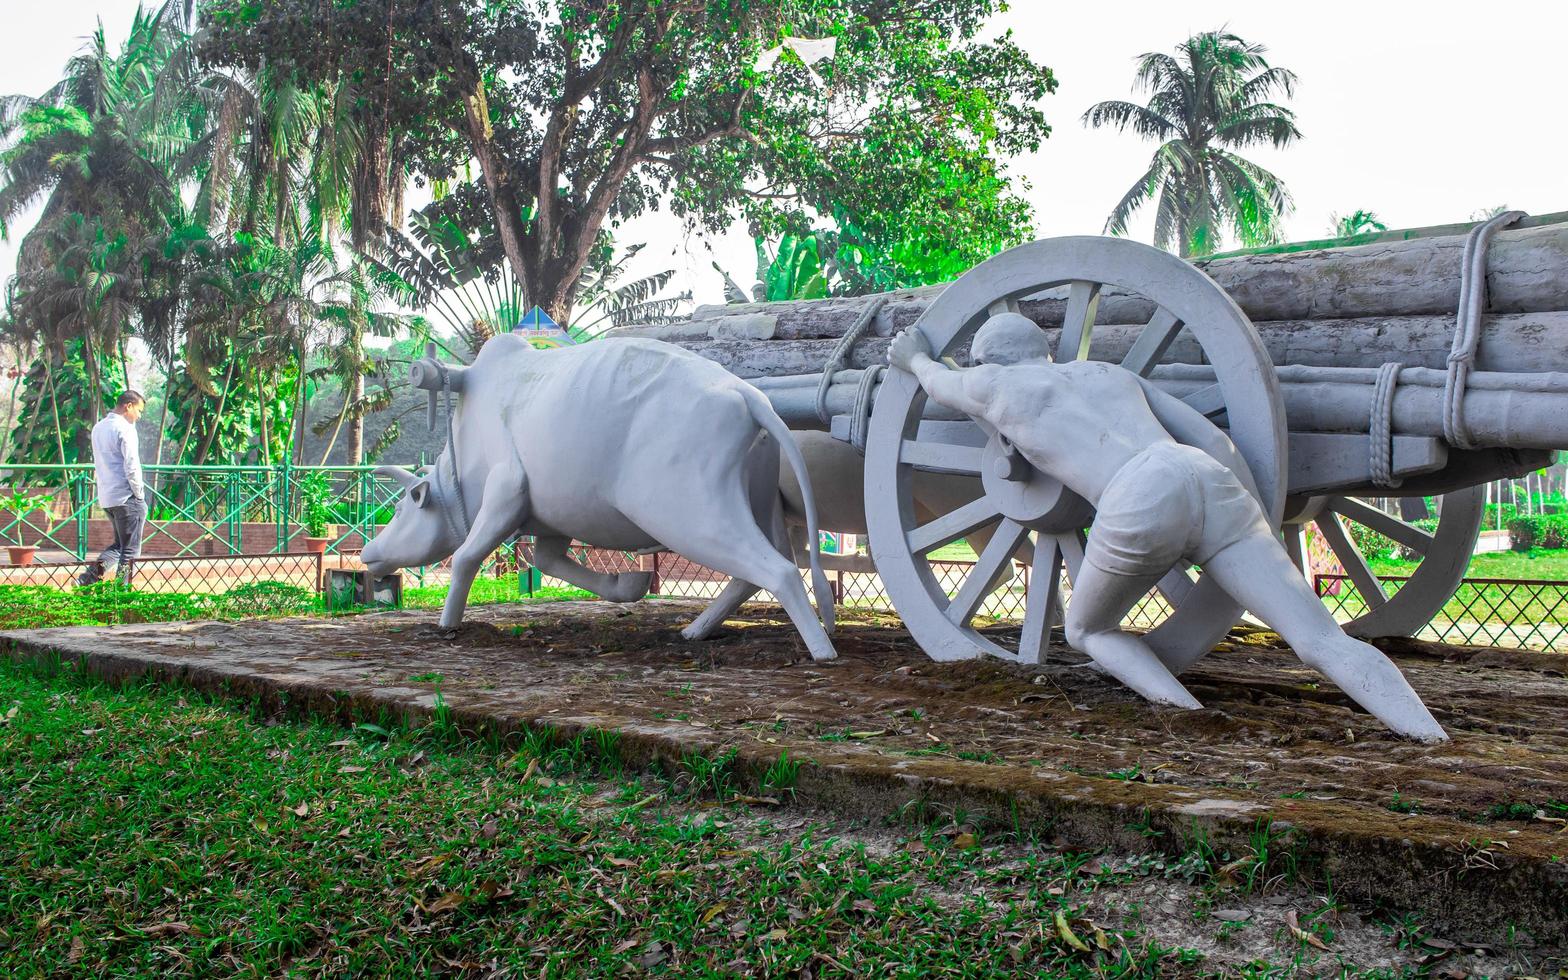 sonargaon, bangladesh, fevereiro de 2019 - estátua de vaca tradicional foto